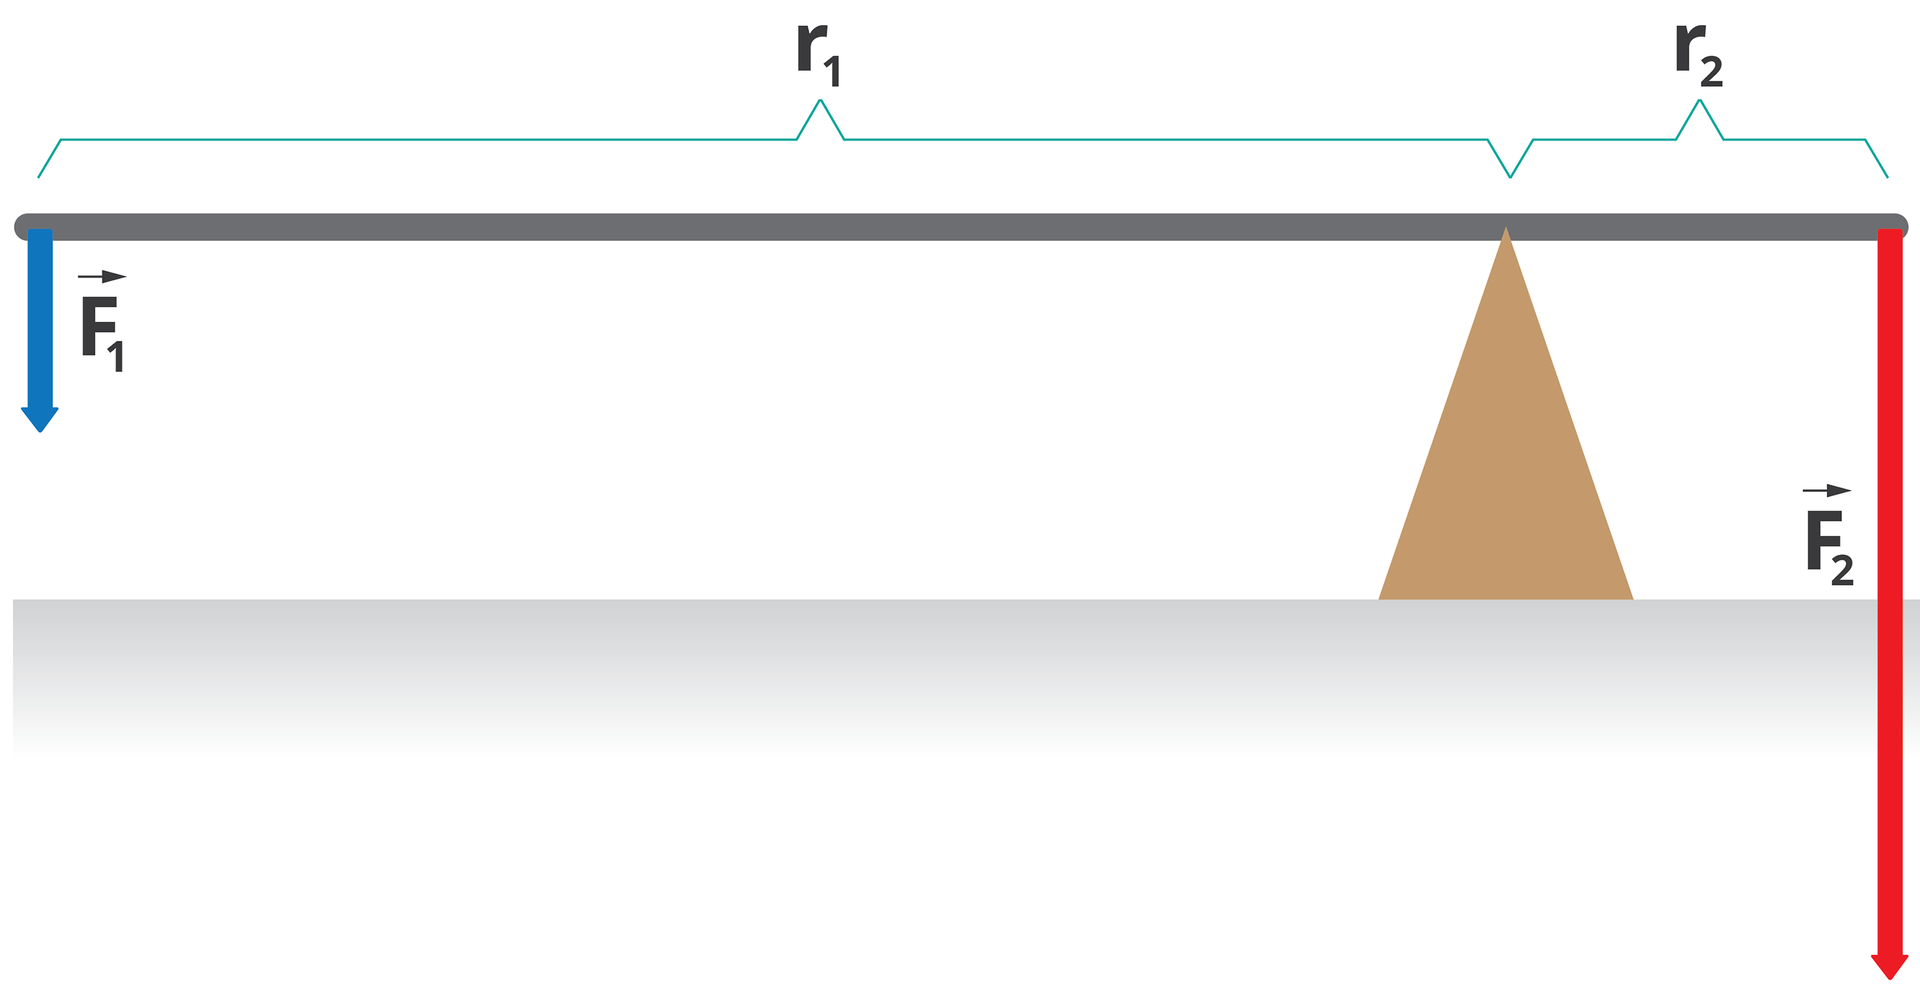 Ilustracja przedstawia dźwignię dwustronną. Rzut z boku. Belka ustawiona poziomo podparta jest w jednej czwartej swojej długości poprzez podporę w kształcie graniastosłupa prawidłowego trójkątnego ustawionego na jednej ze swoich ścian. Do końca belki znajdującego się w mniejszej odległości od podpory zaczepiony jest wektor siły F z indeksem dolnym dwa, który jest znacznie dłuższy niż wektor siły F z indeksem dolnym jeden, który jest zaczepiony na drugim końcu belki. Oba wektory mają kierunek pionowy zwrot w dół. Odległość od punktu podparcia belki do punktu przyłożenia wektora F z indeksem dolnym jeden oznaczono jako r z indeksem dolnym jeden, a odległość od punktu podparcia belki do punktu przyłożenia wektora F z indeksem dolnym dwa oznaczono jako r z indeksem dolnym dwa.